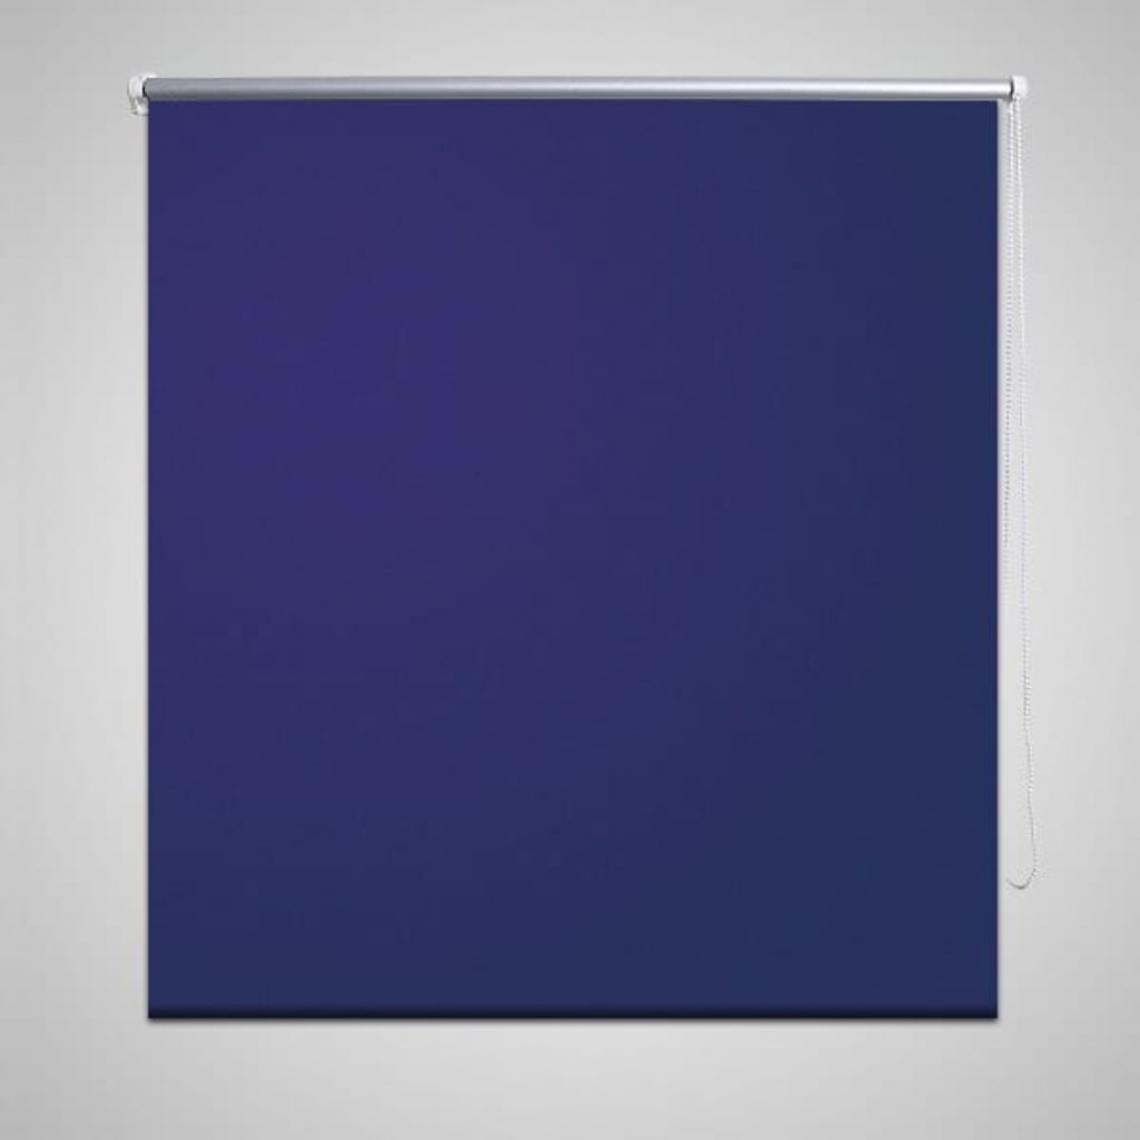 Hucoco - Store enrouleur occultant 120 x 175 cm bleu - Bleu - Store compatible Velux